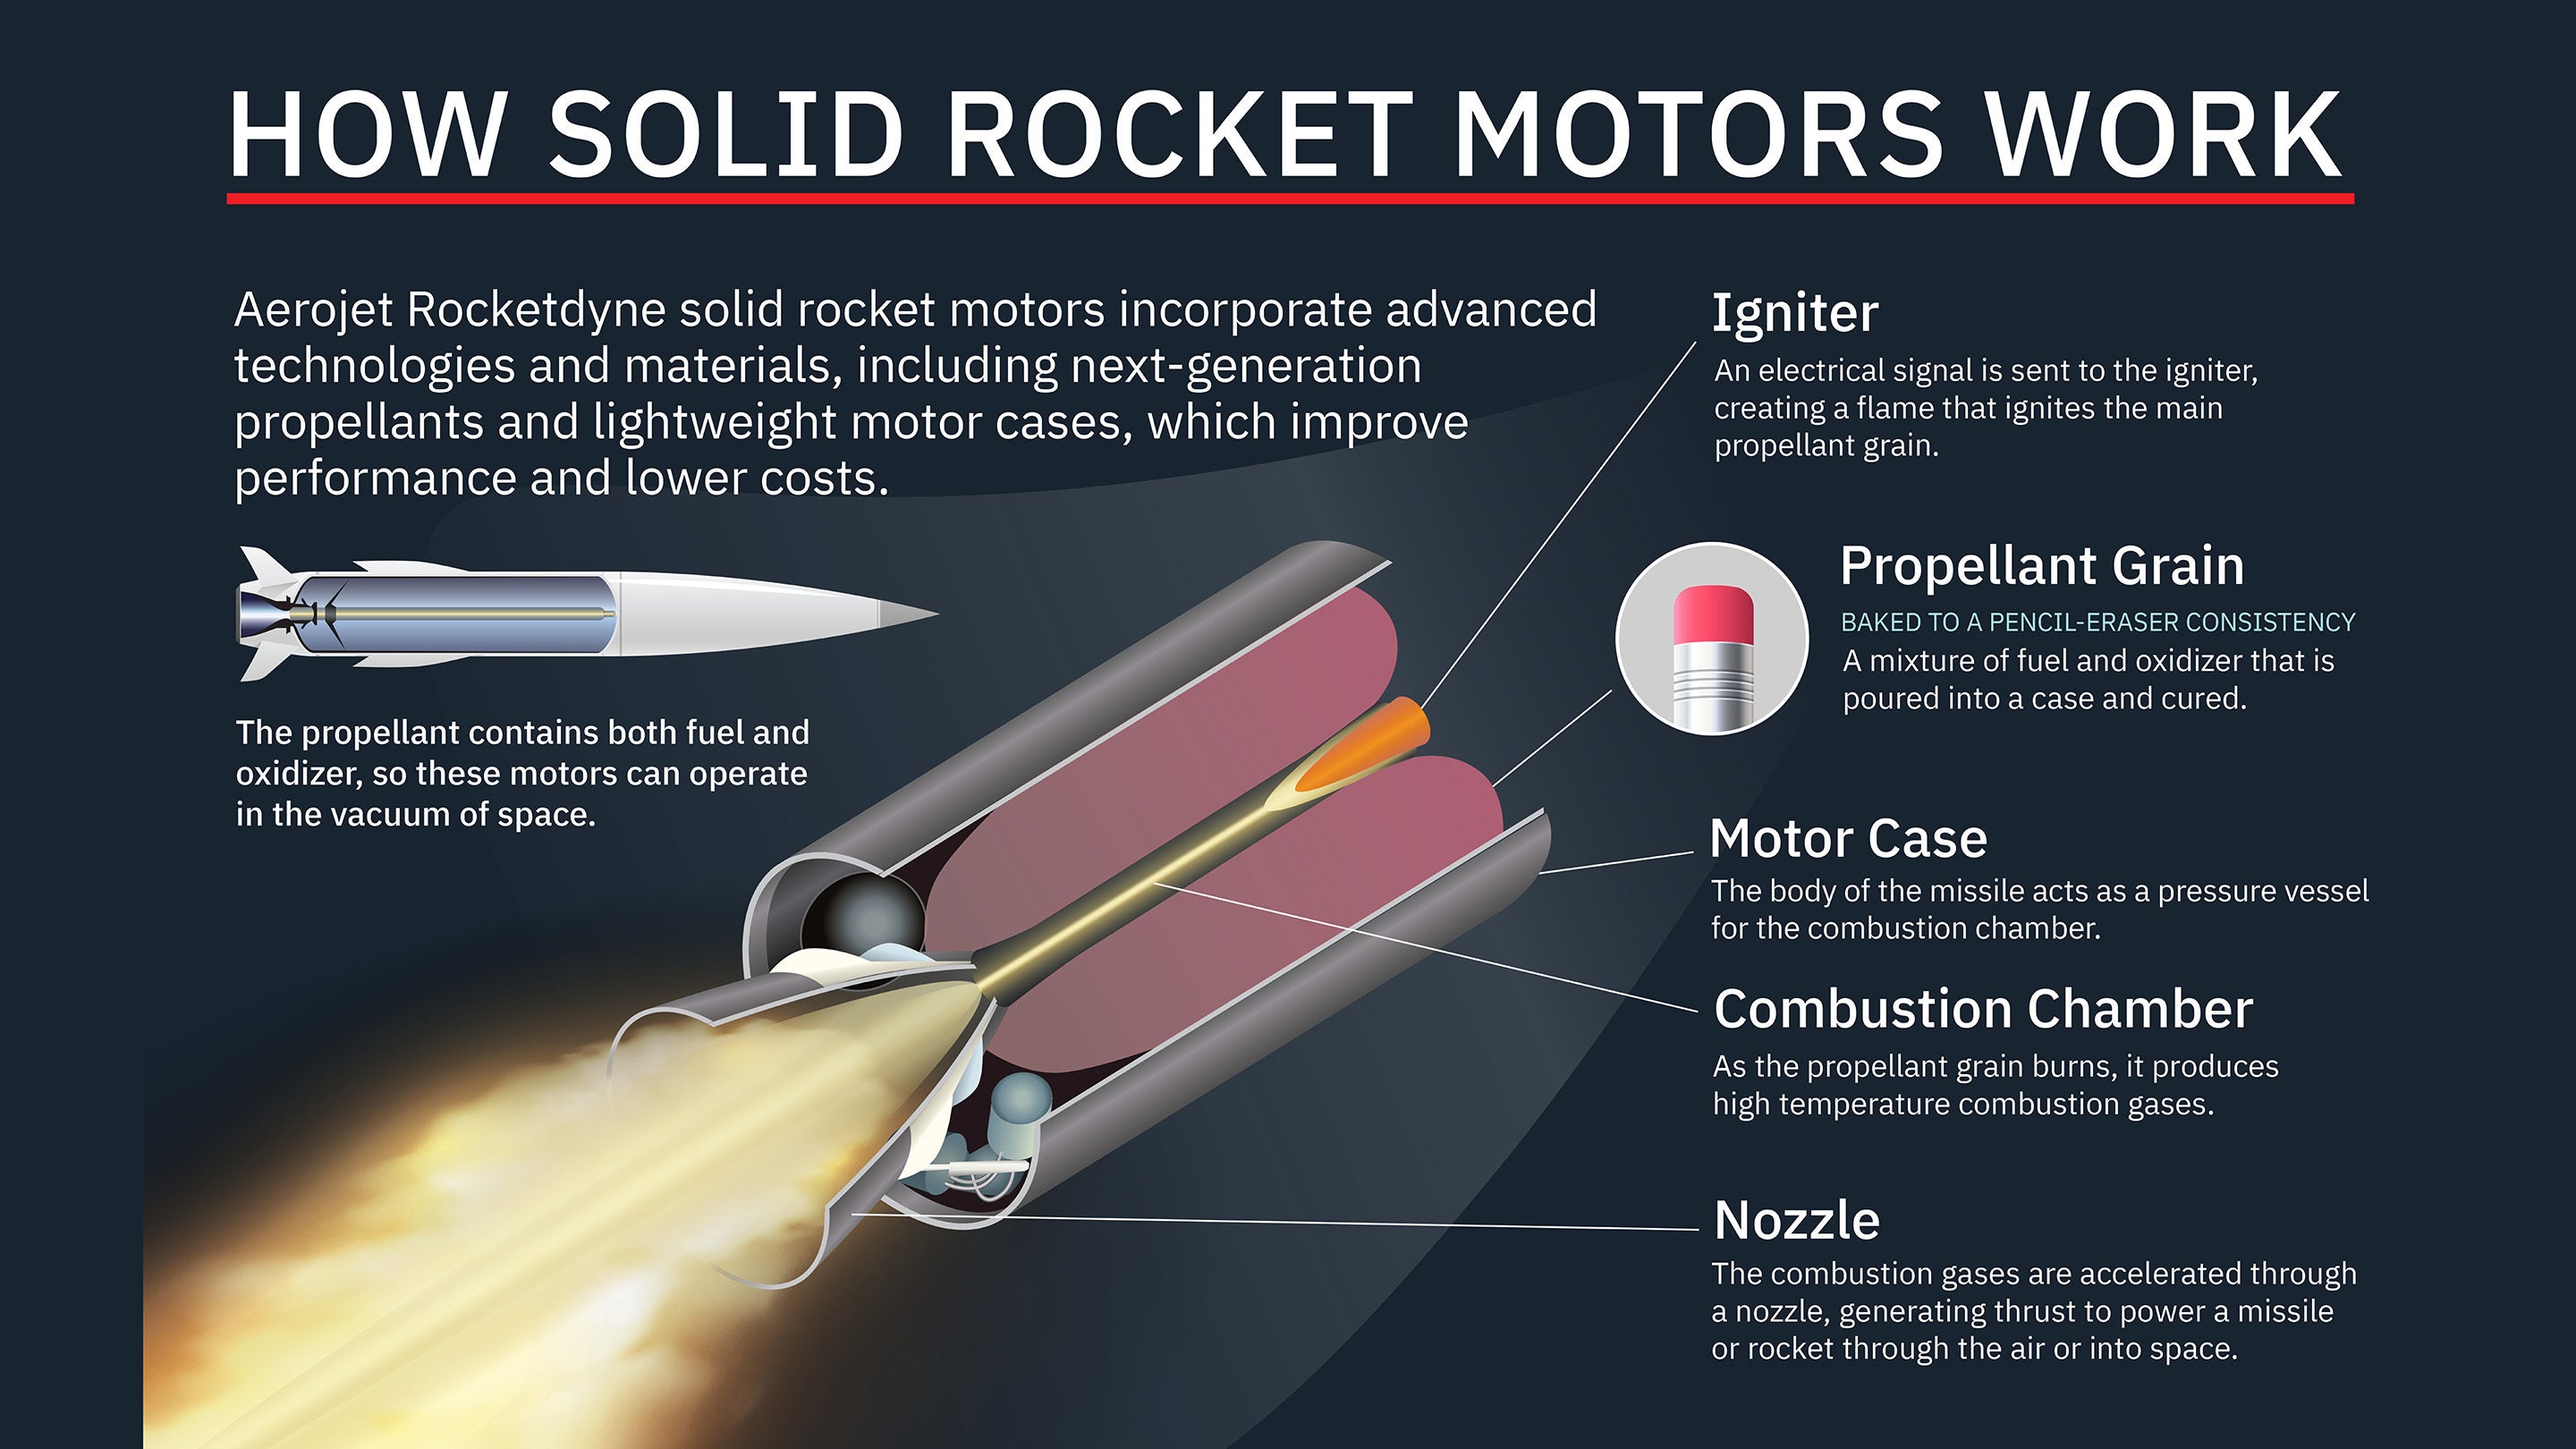 Information graphic describing how solid rocket motors work